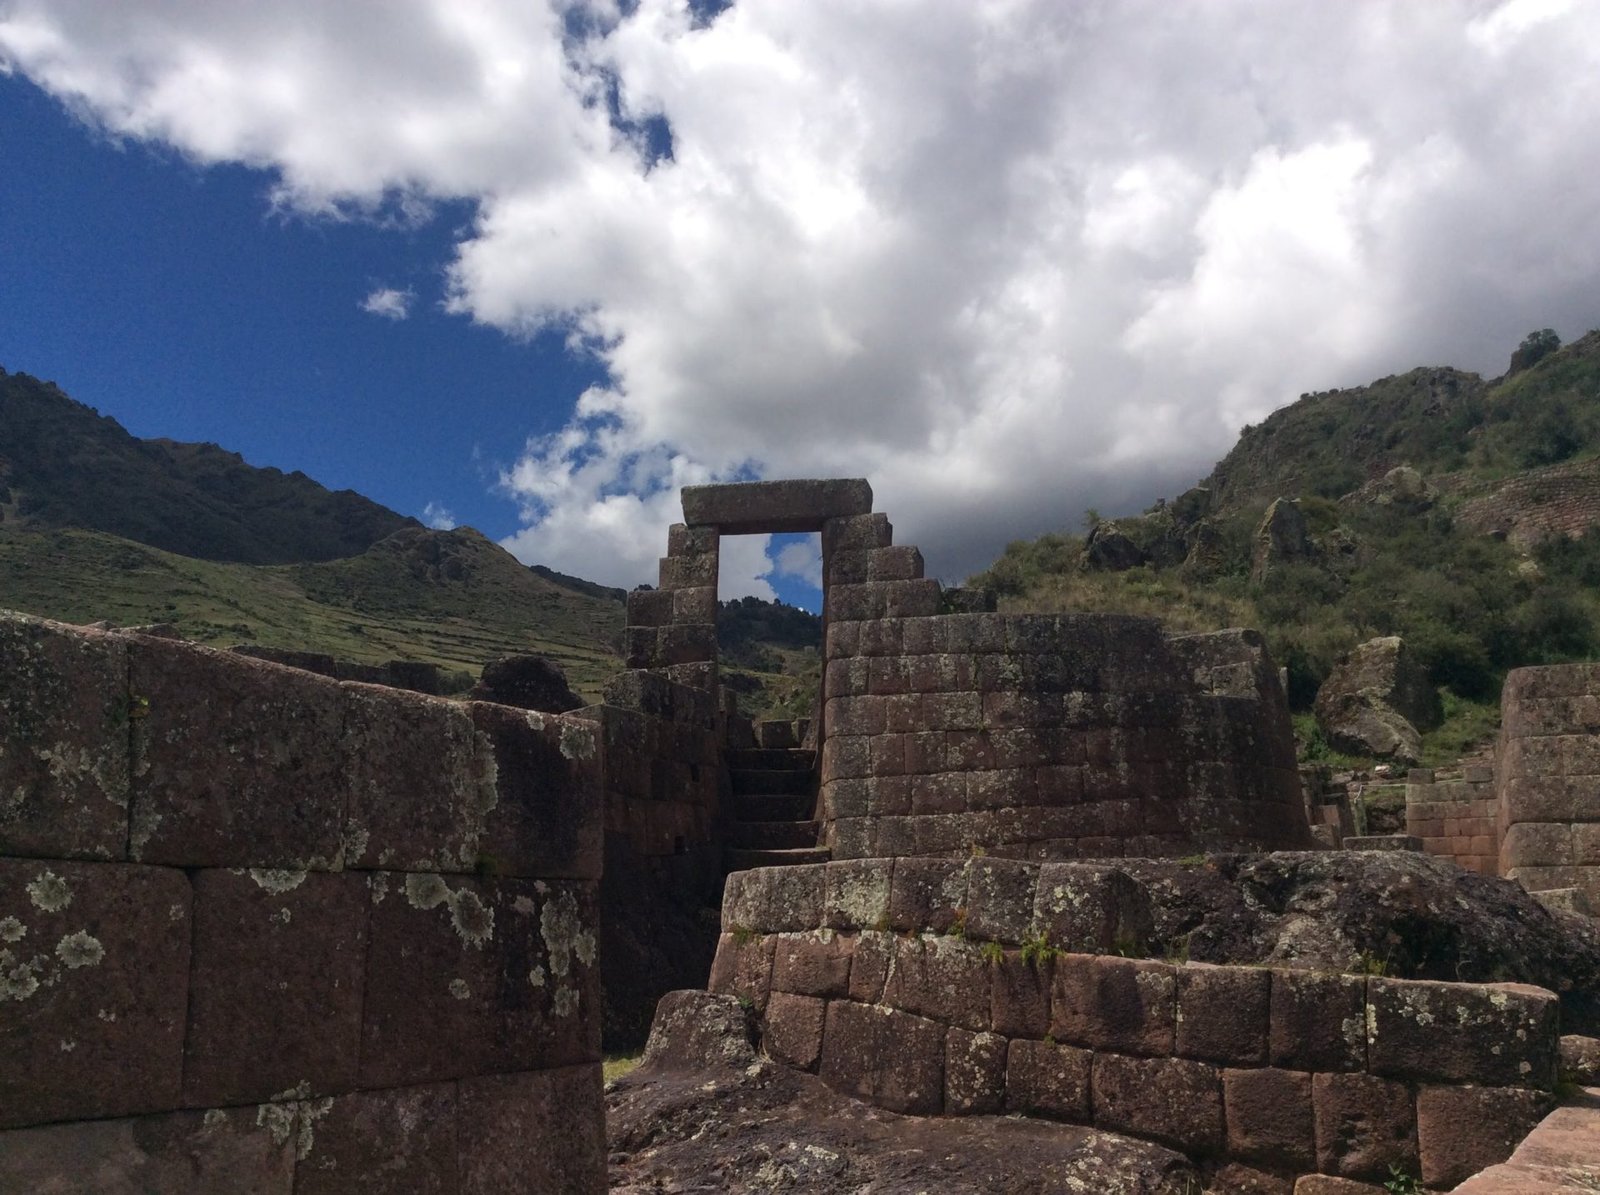 Incan ruins in Pisac, Peru on a cloudy day